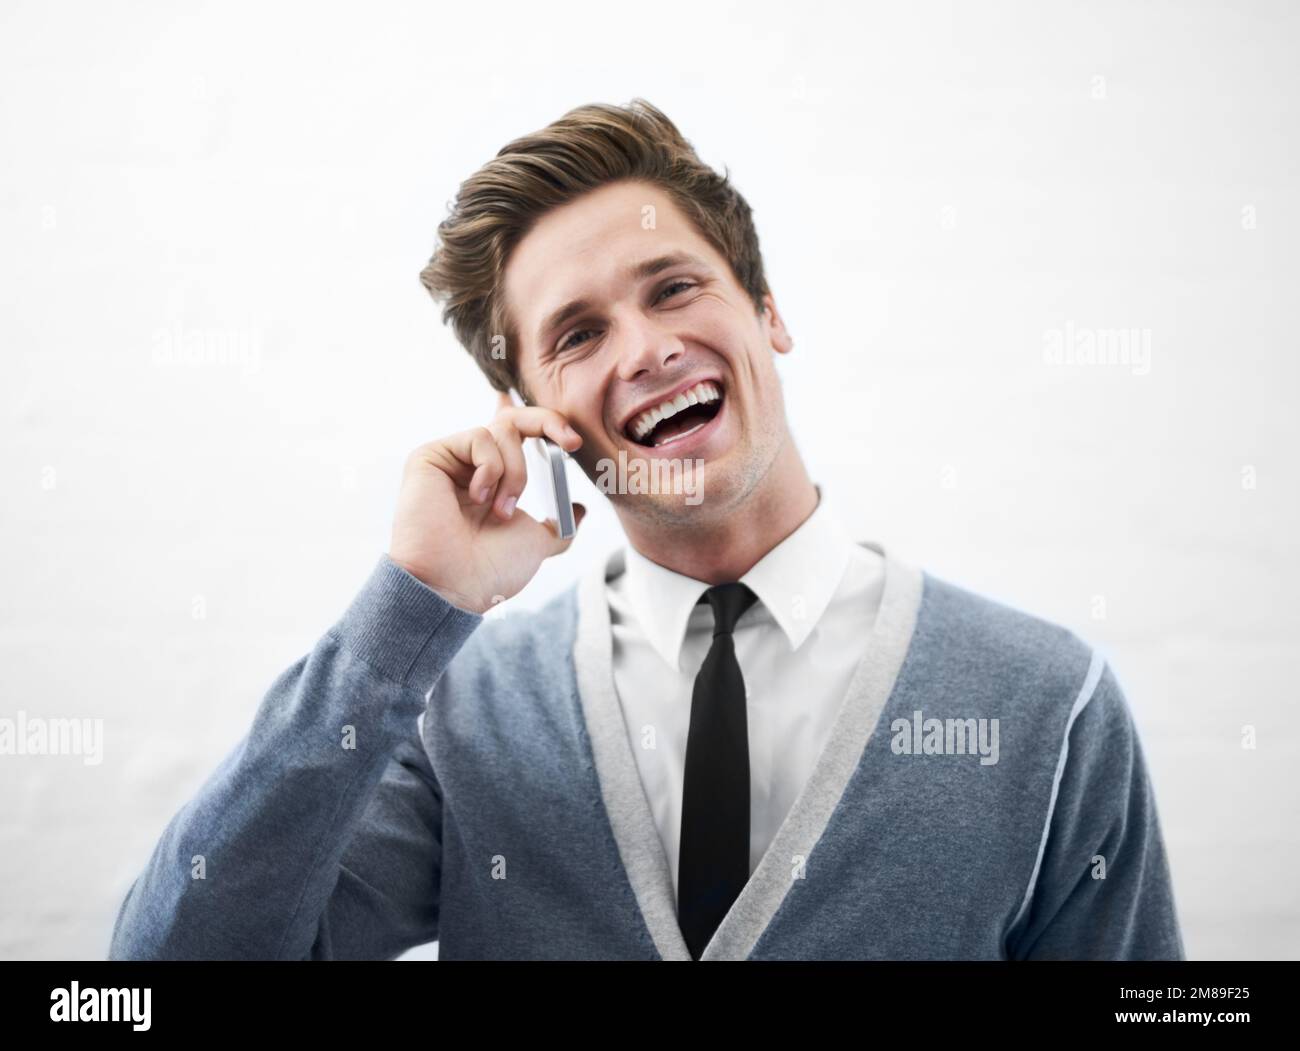 Schön, von Ihnen zu hören. Ein junger Mann, der lacht und mit seinem Handy spricht. Stockfoto